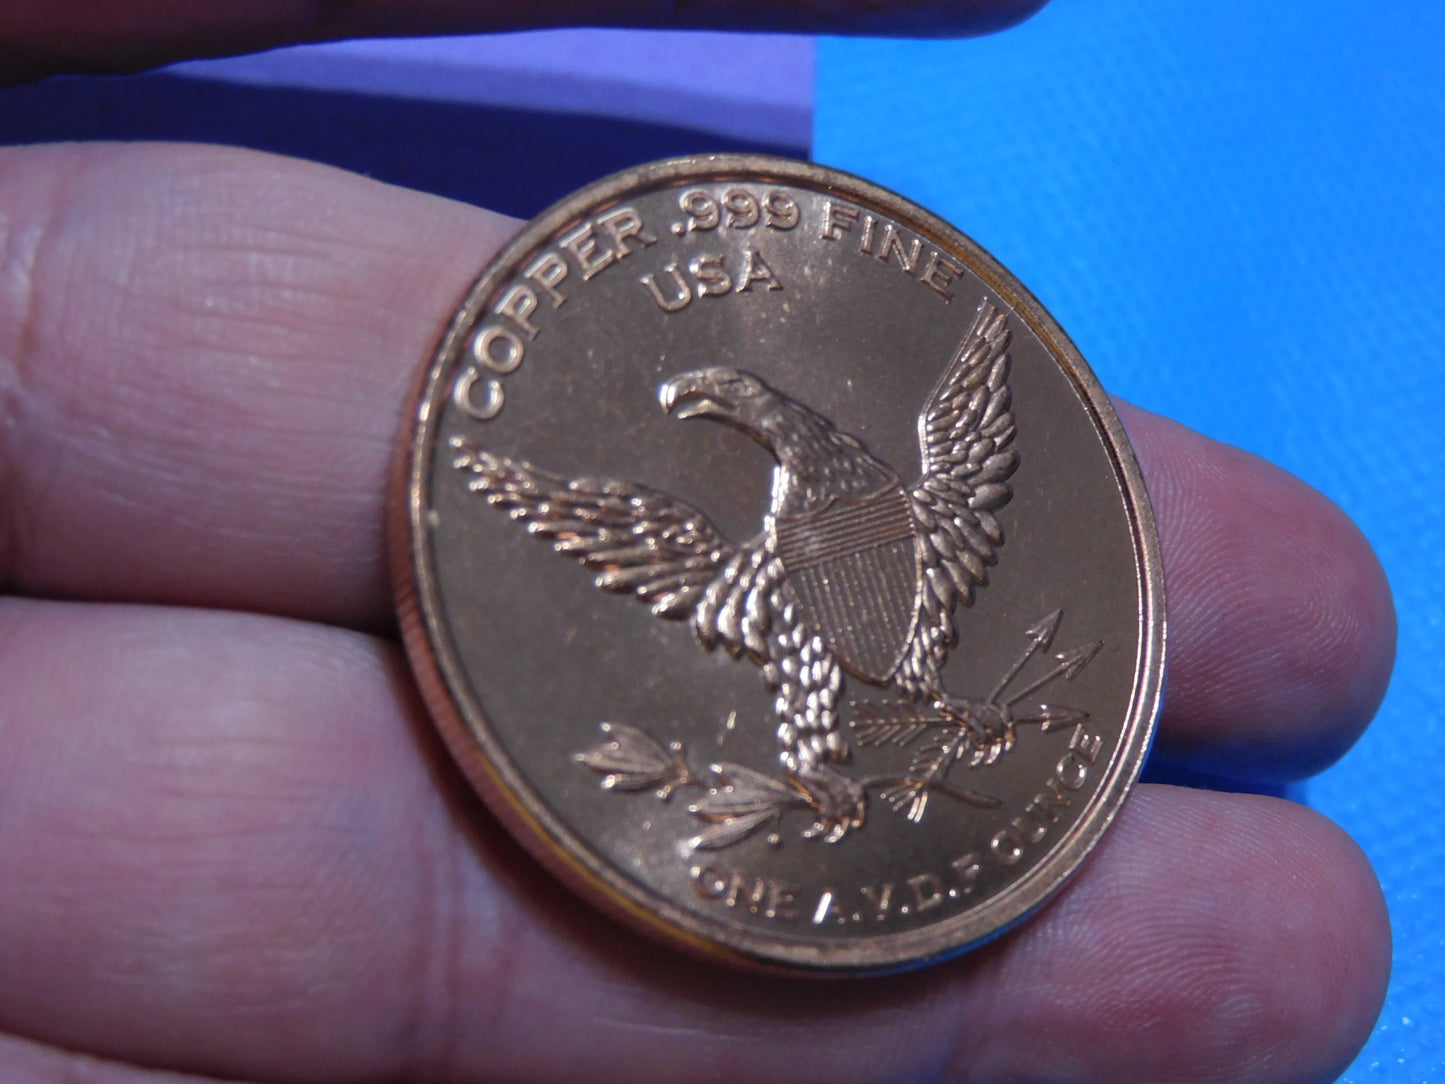 Megalodon Copper Coin